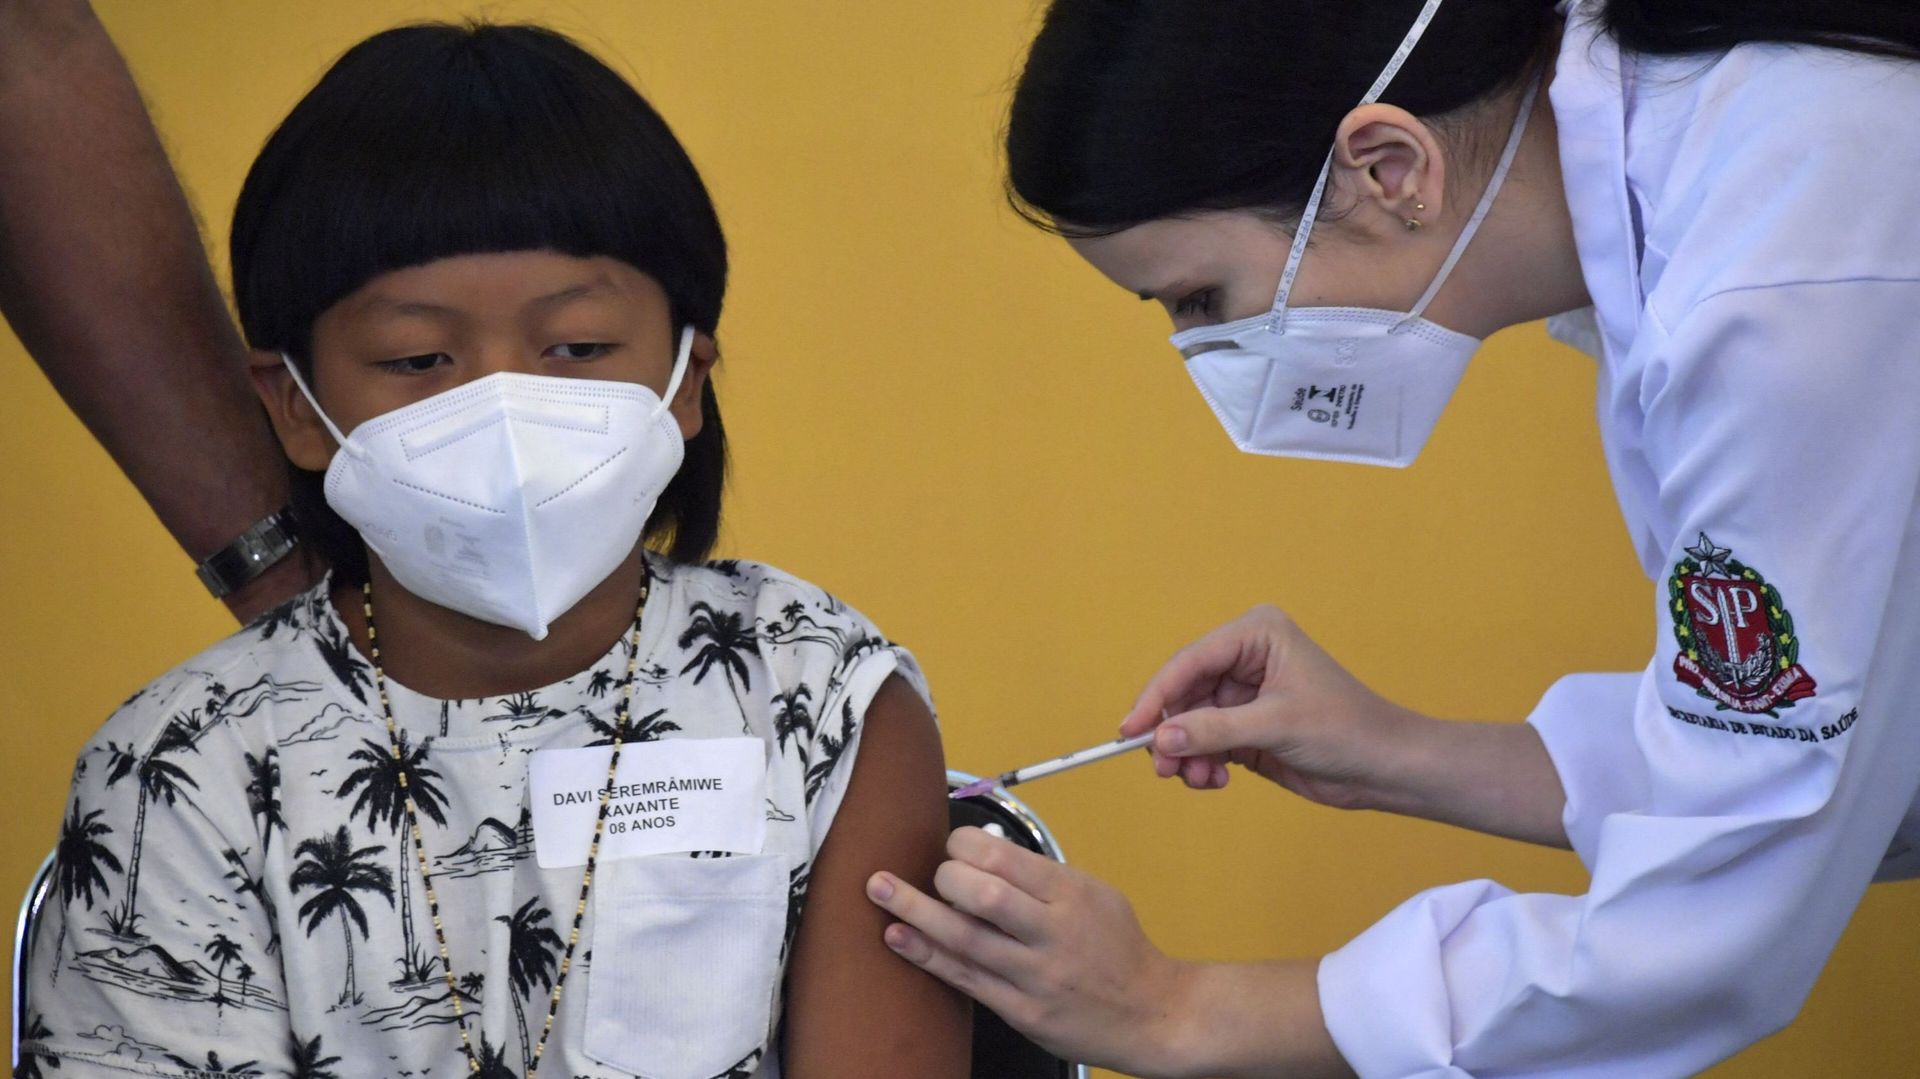 Davi Seremramiwe Xavante, petit garçon indigène de huit ans, a été le premier enfant brésilien vacciné, lors d'une cérémonie officielle à l'Hôpital des Cliniques de Sao Paulo.